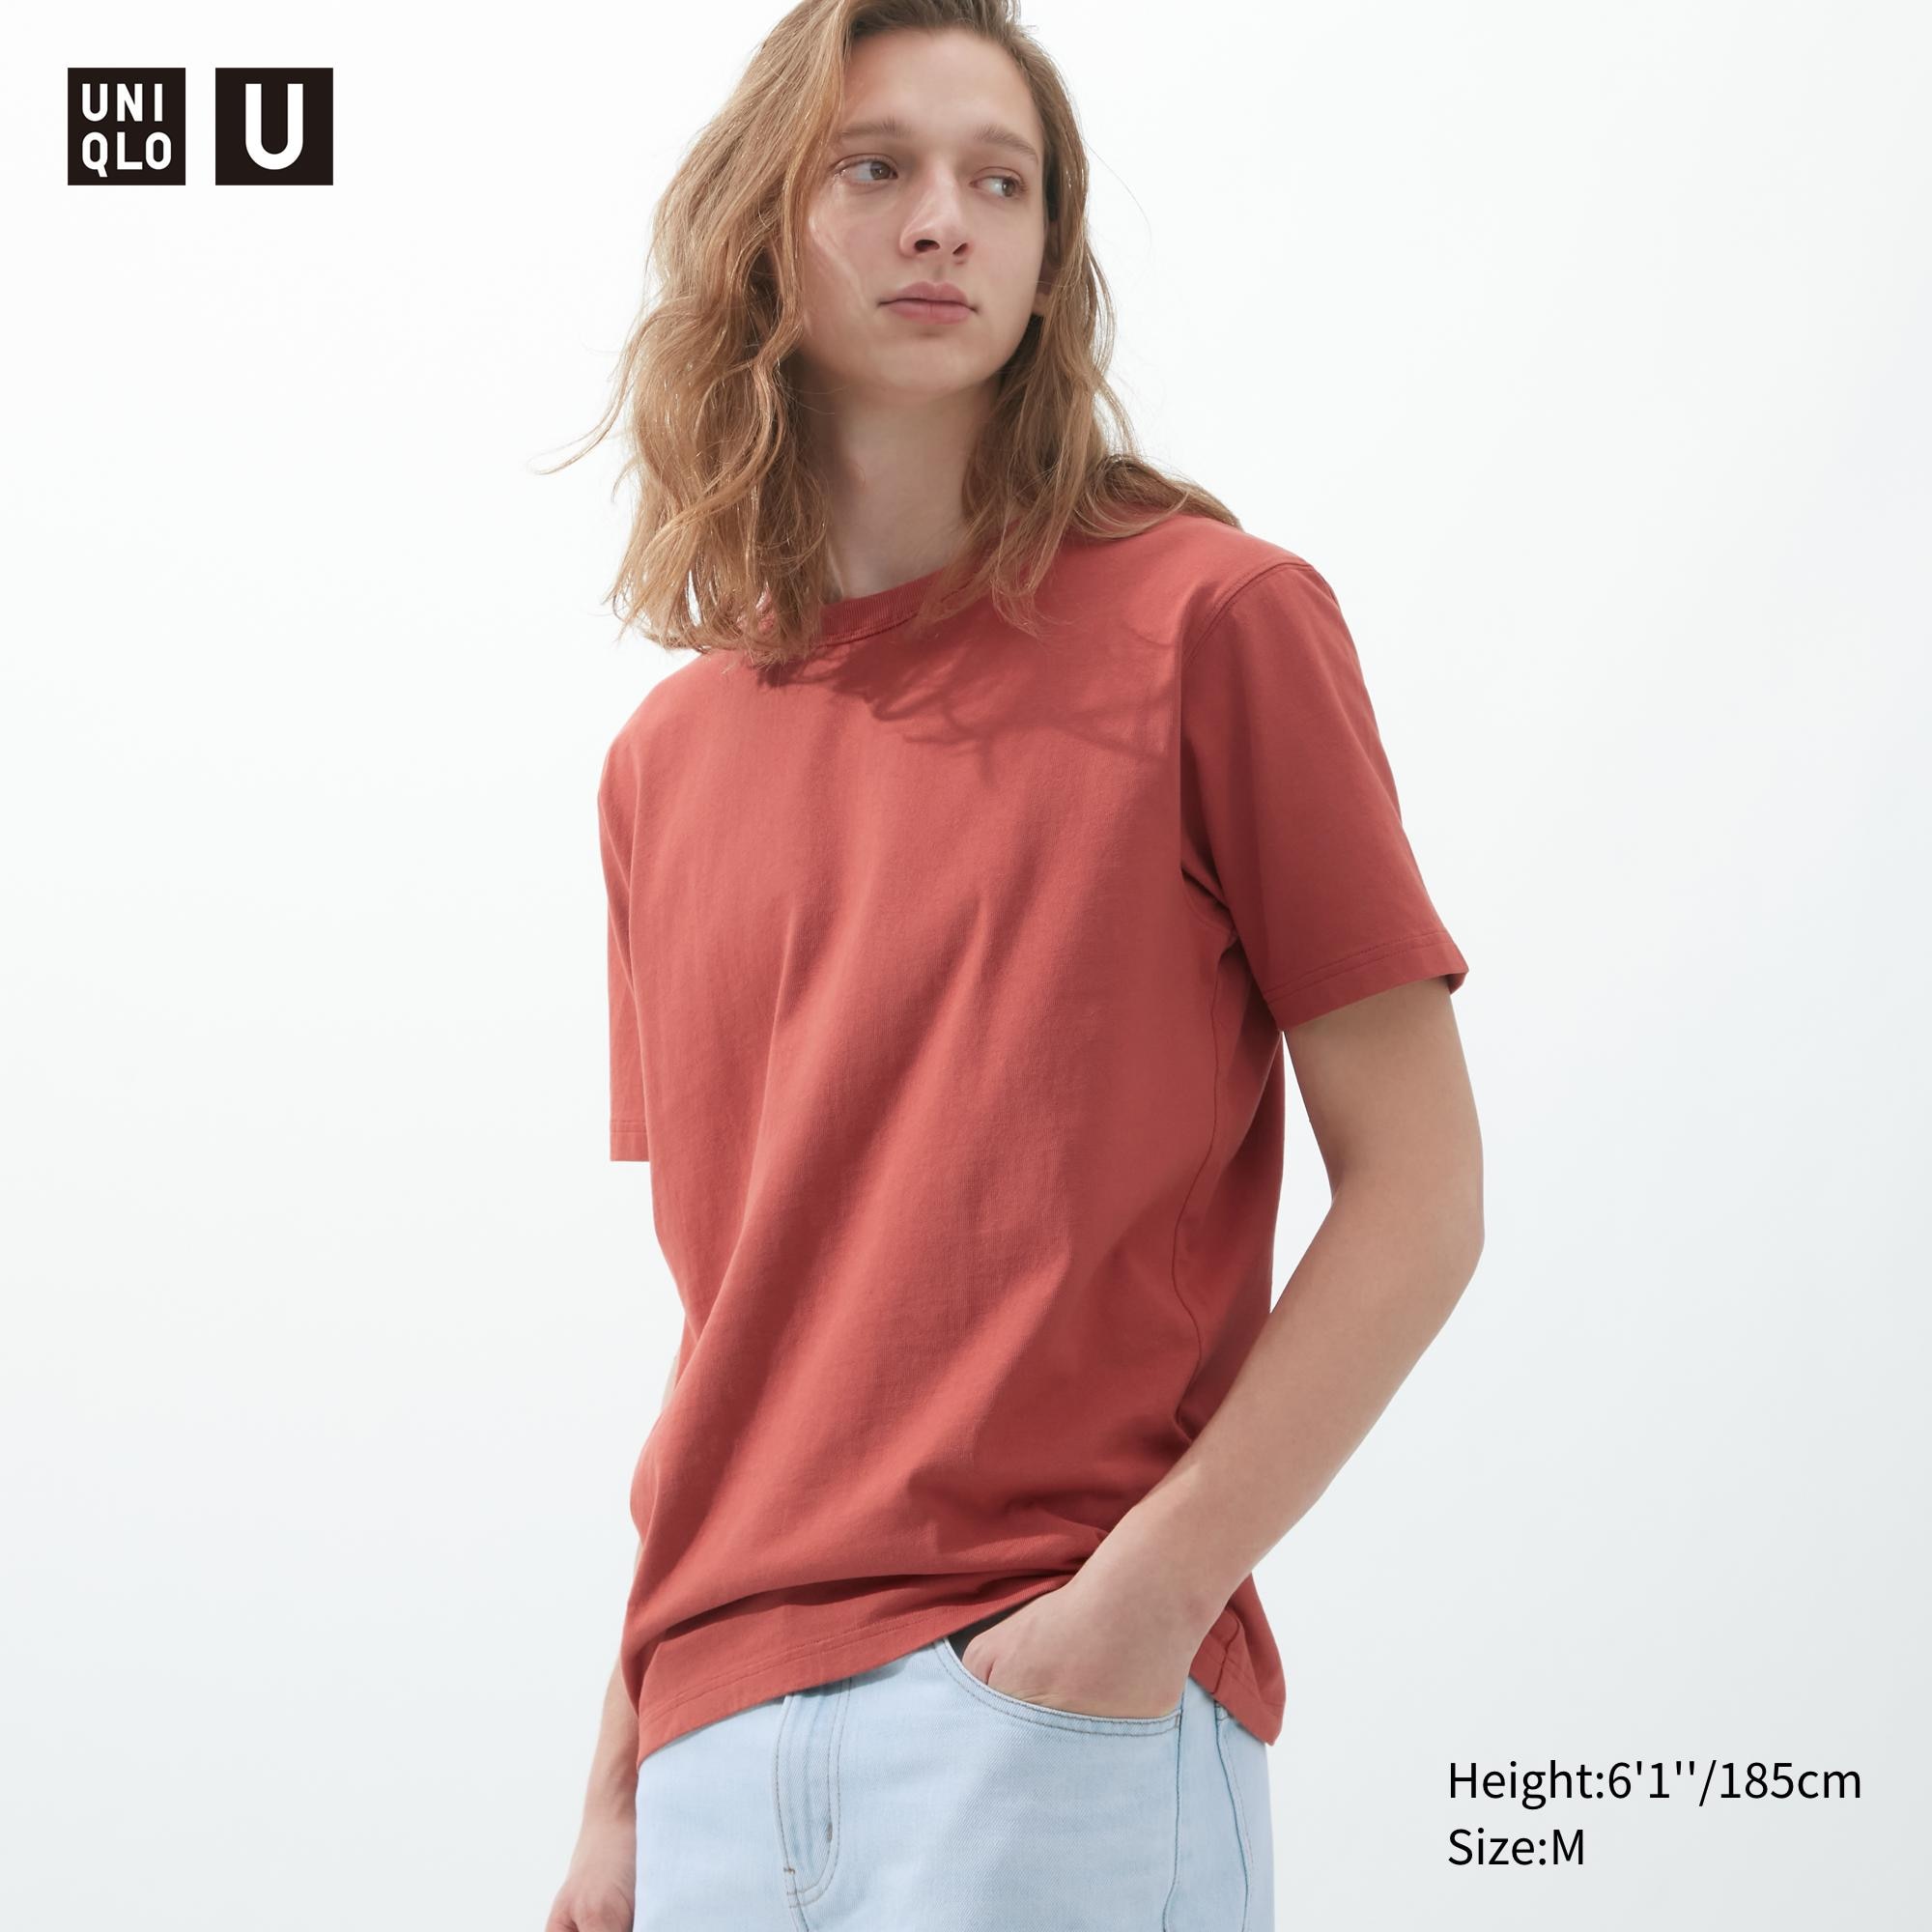 U Crew Neck Short-Sleeve T-Shirt | UNIQLO US